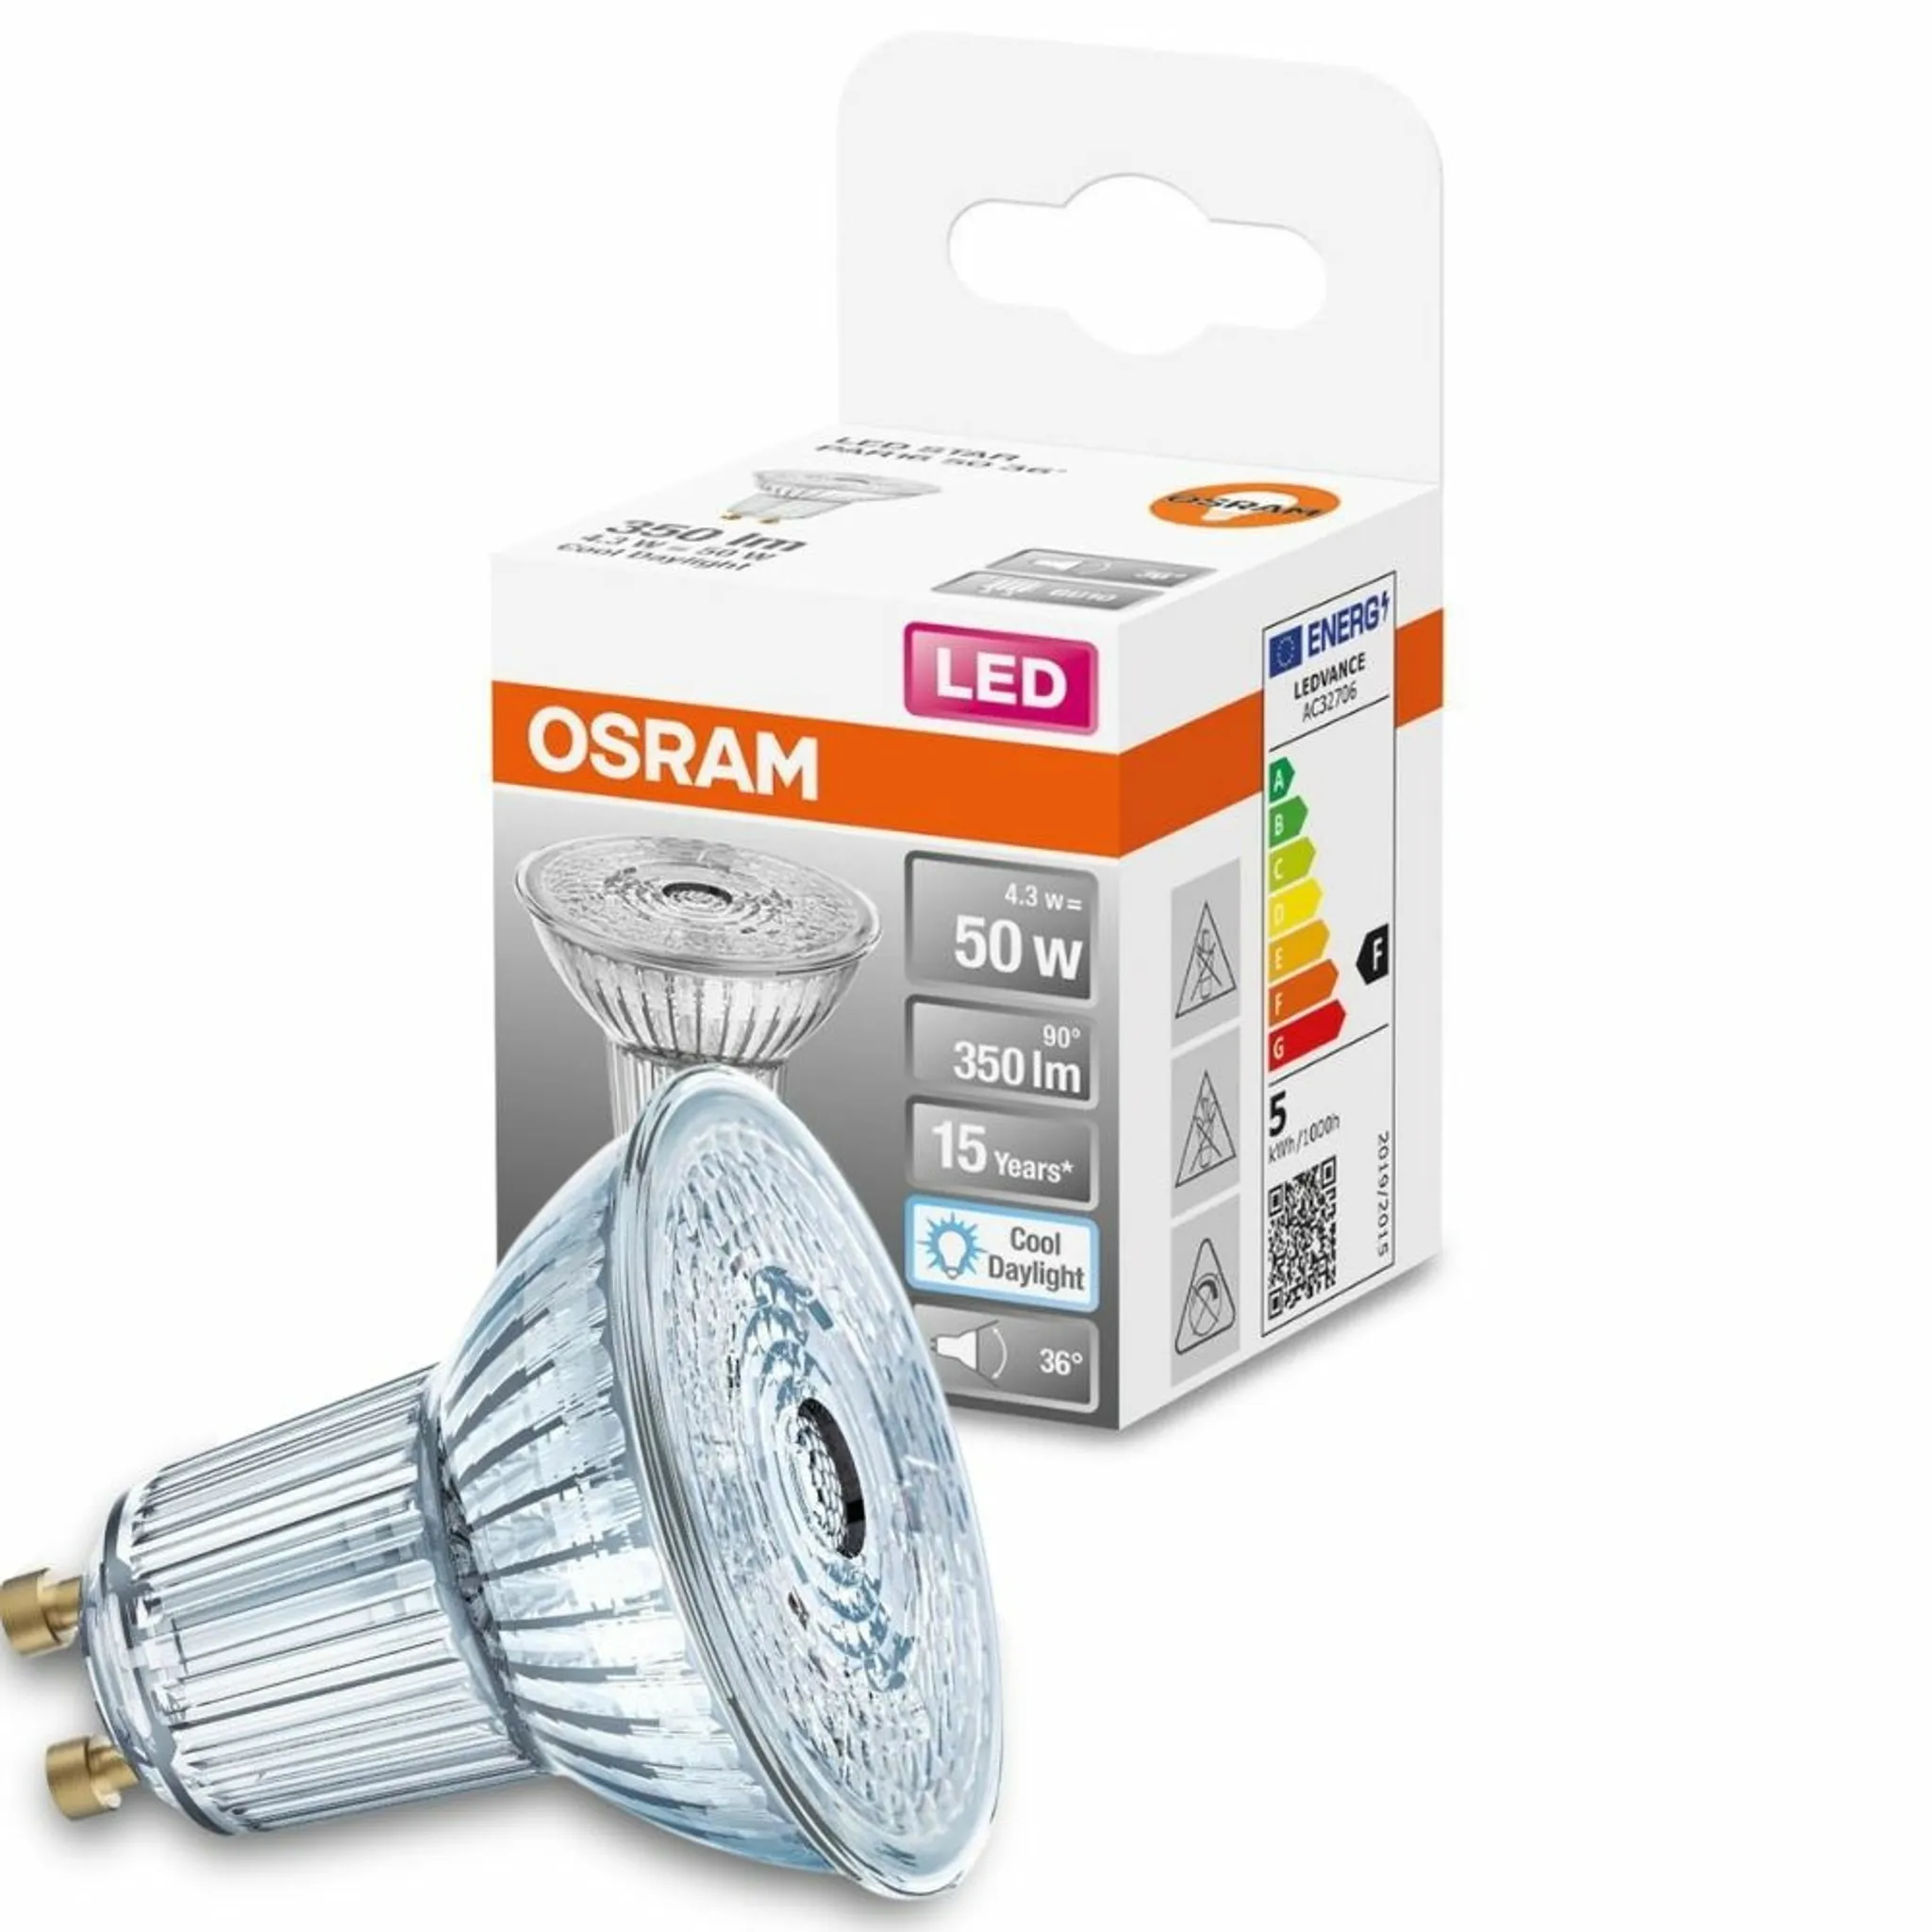 OSRAM LED Star PAR16 50 LED-Reflektorlampe